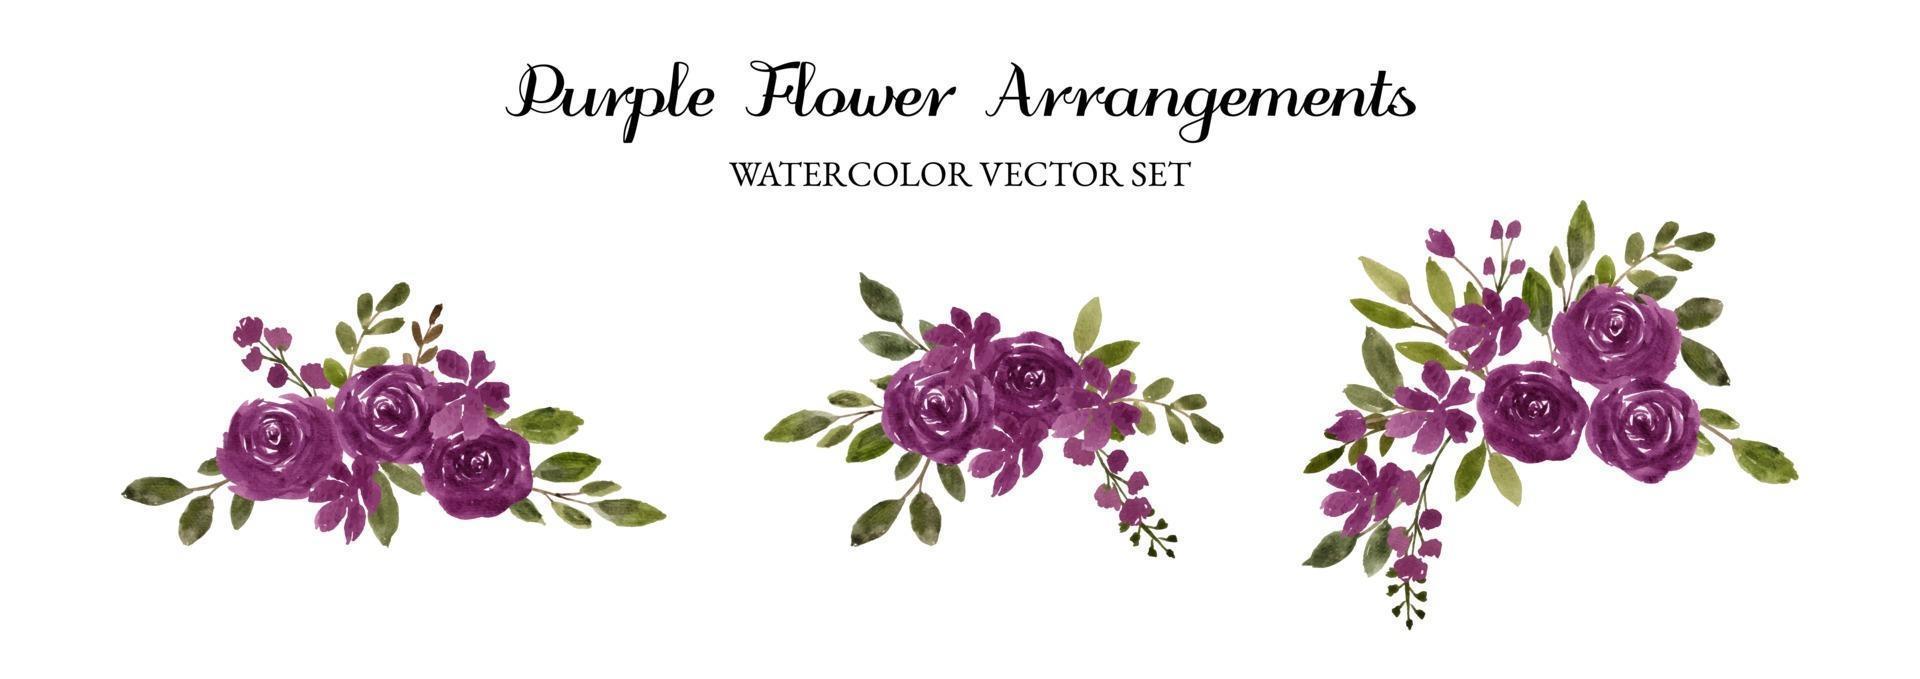 arreglo de flores de acuarela púrpura conjunto de vectores separados